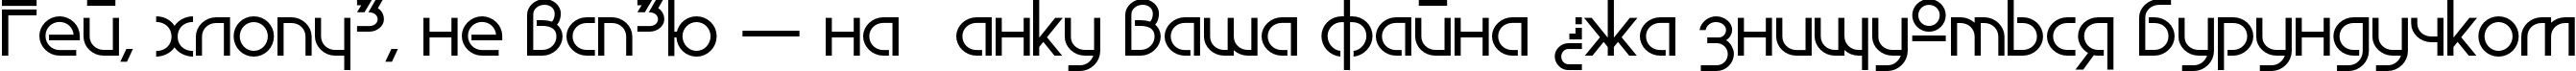 Пример написания шрифтом EdgeLine Bold текста на украинском